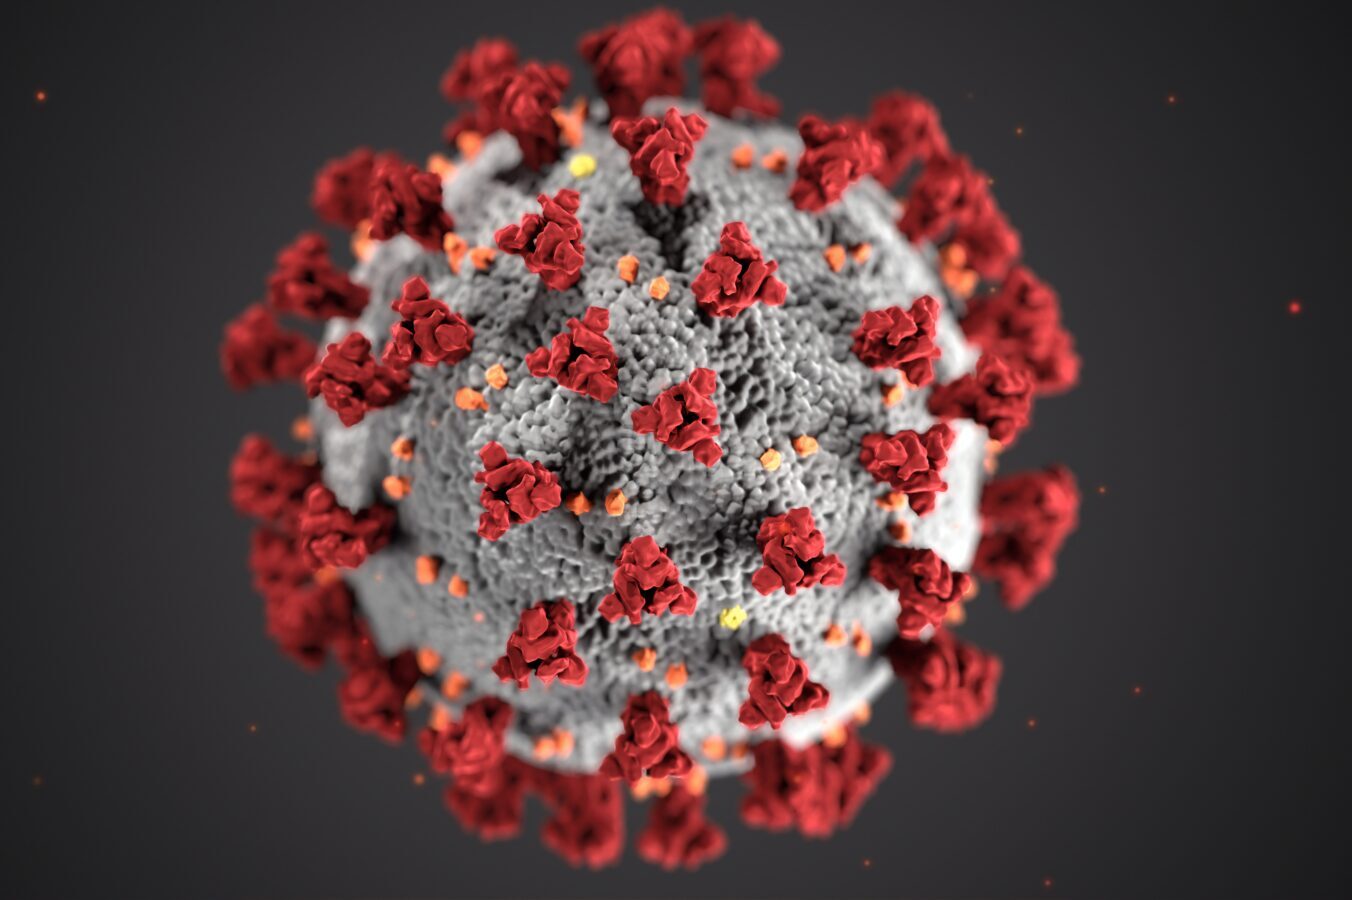 Udbrud af ny coronavirus – en force majeure begivenhed?